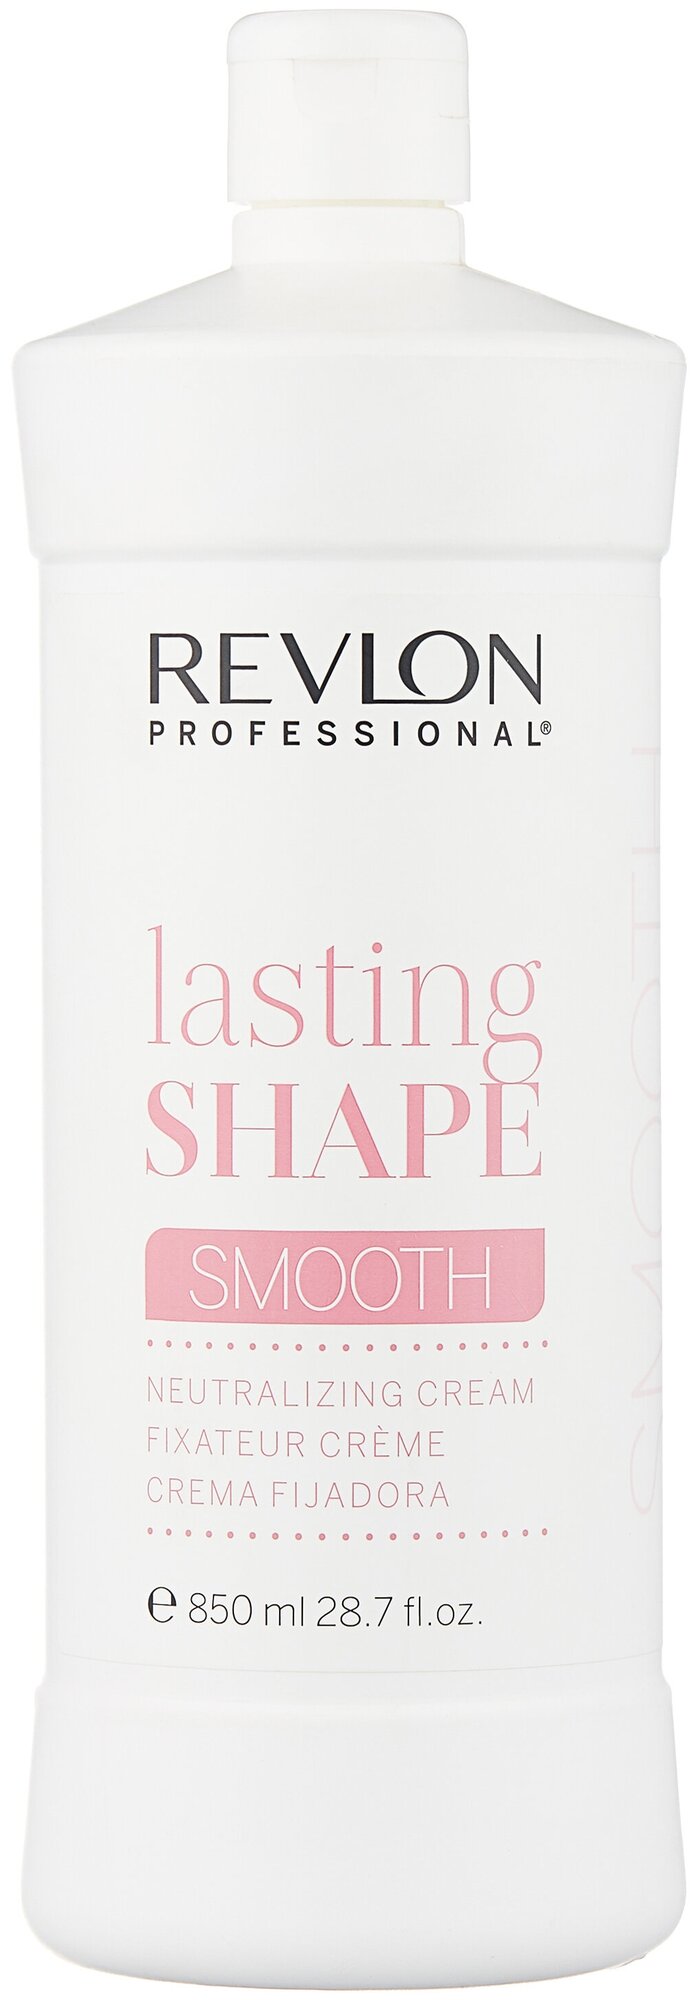 Revlon Professional Lasting Shape Smooth Нейтрализующий крем для выпрямления волос, 850 мл